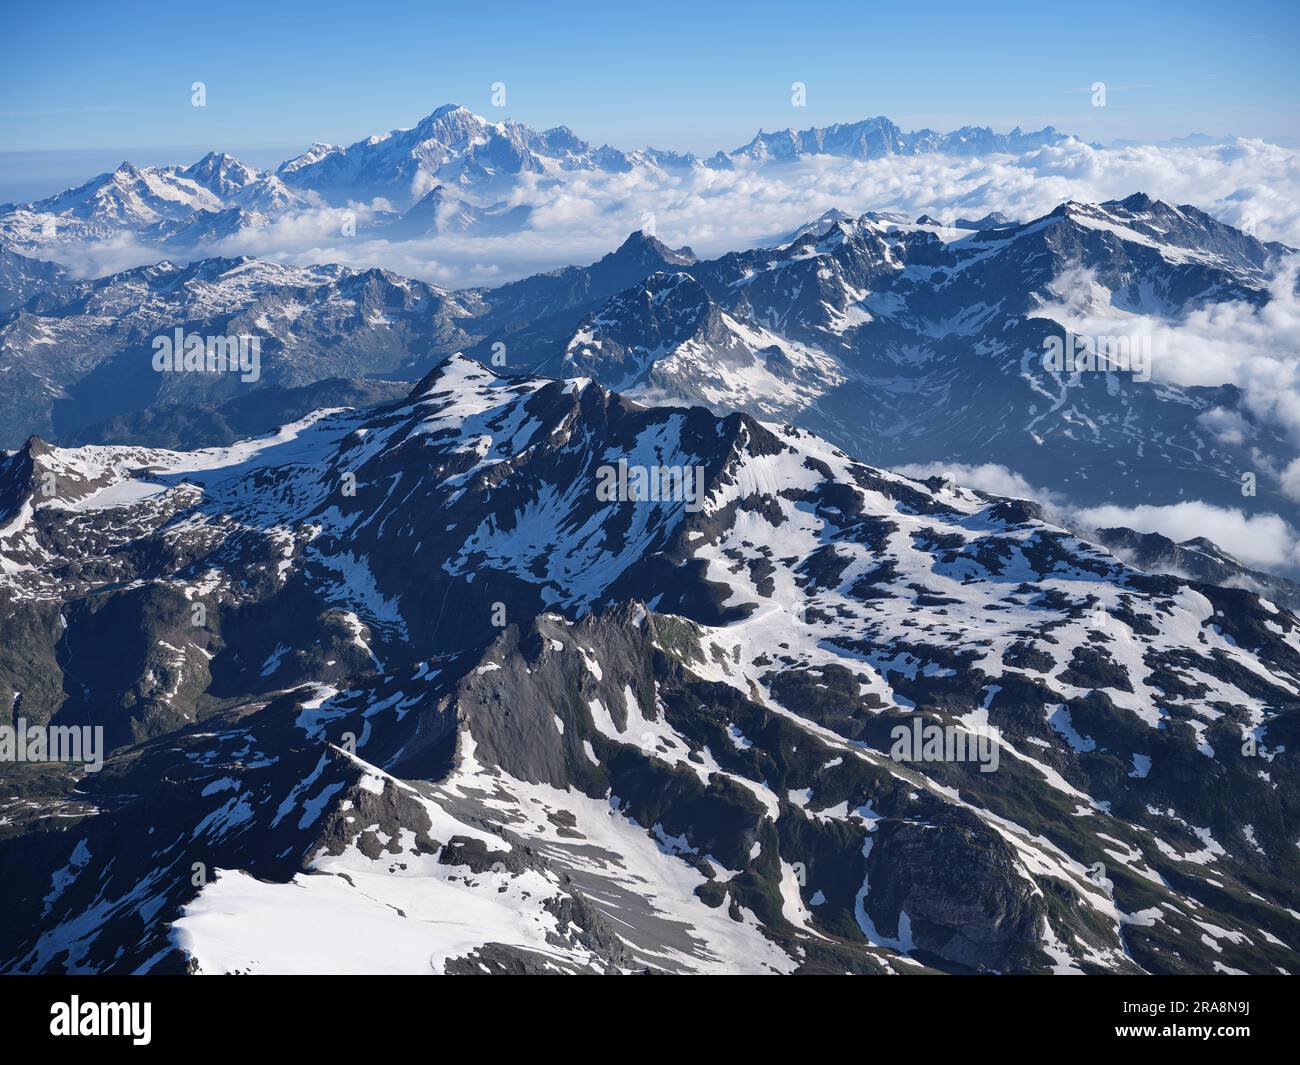 VISTA AEREA. Paesaggio montuoso dell'alta Valgrisenche con il massiccio del Monte bianco in lontananza. Valle d'Aosta, Italia. Foto Stock